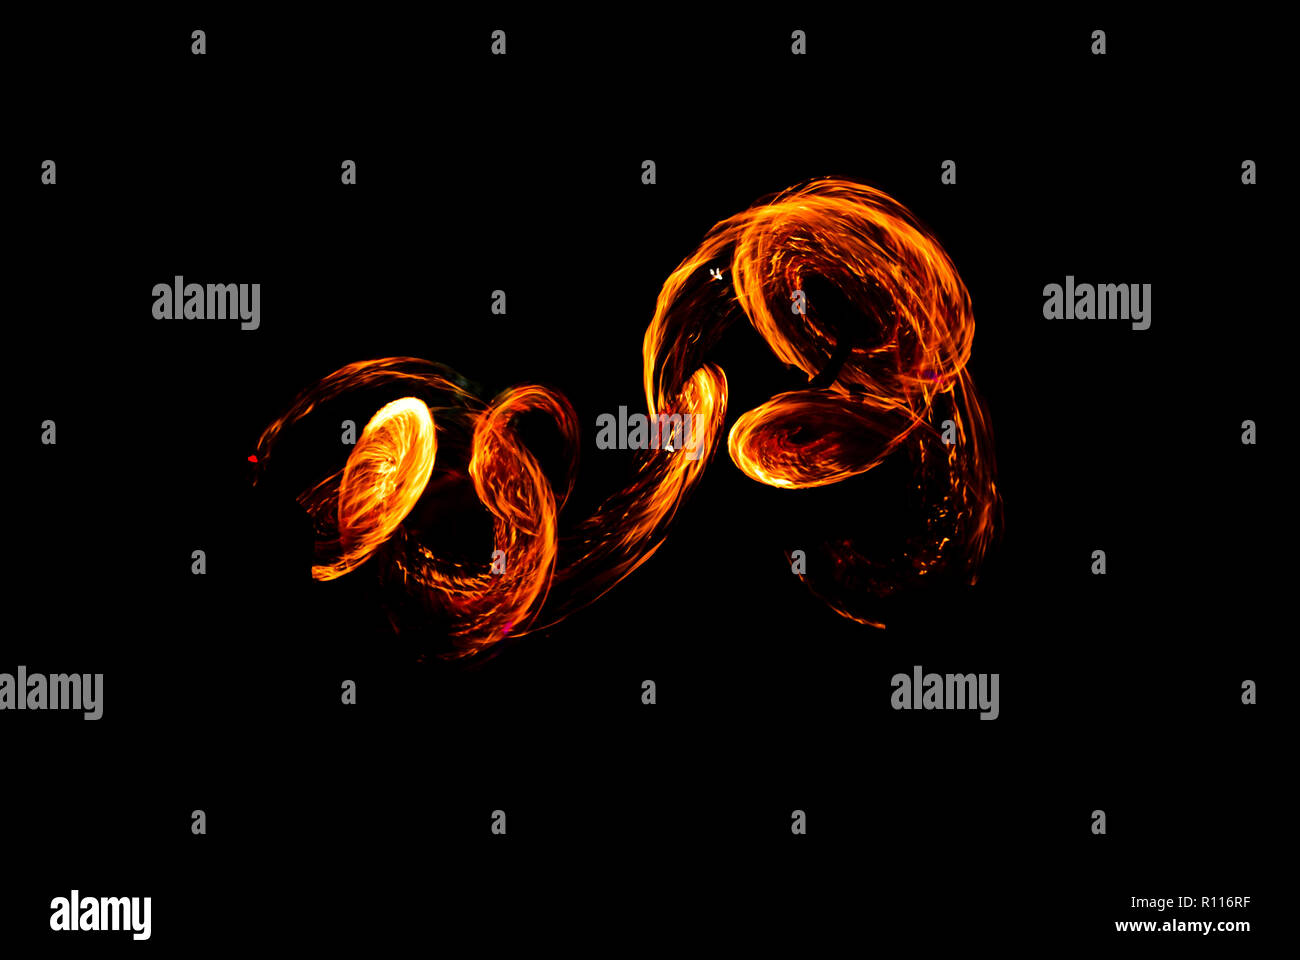 Zusammenfassung Hintergrund der Flammen, machen Sie ein Foto von feuershow am Strand bei Nacht. Stockfoto